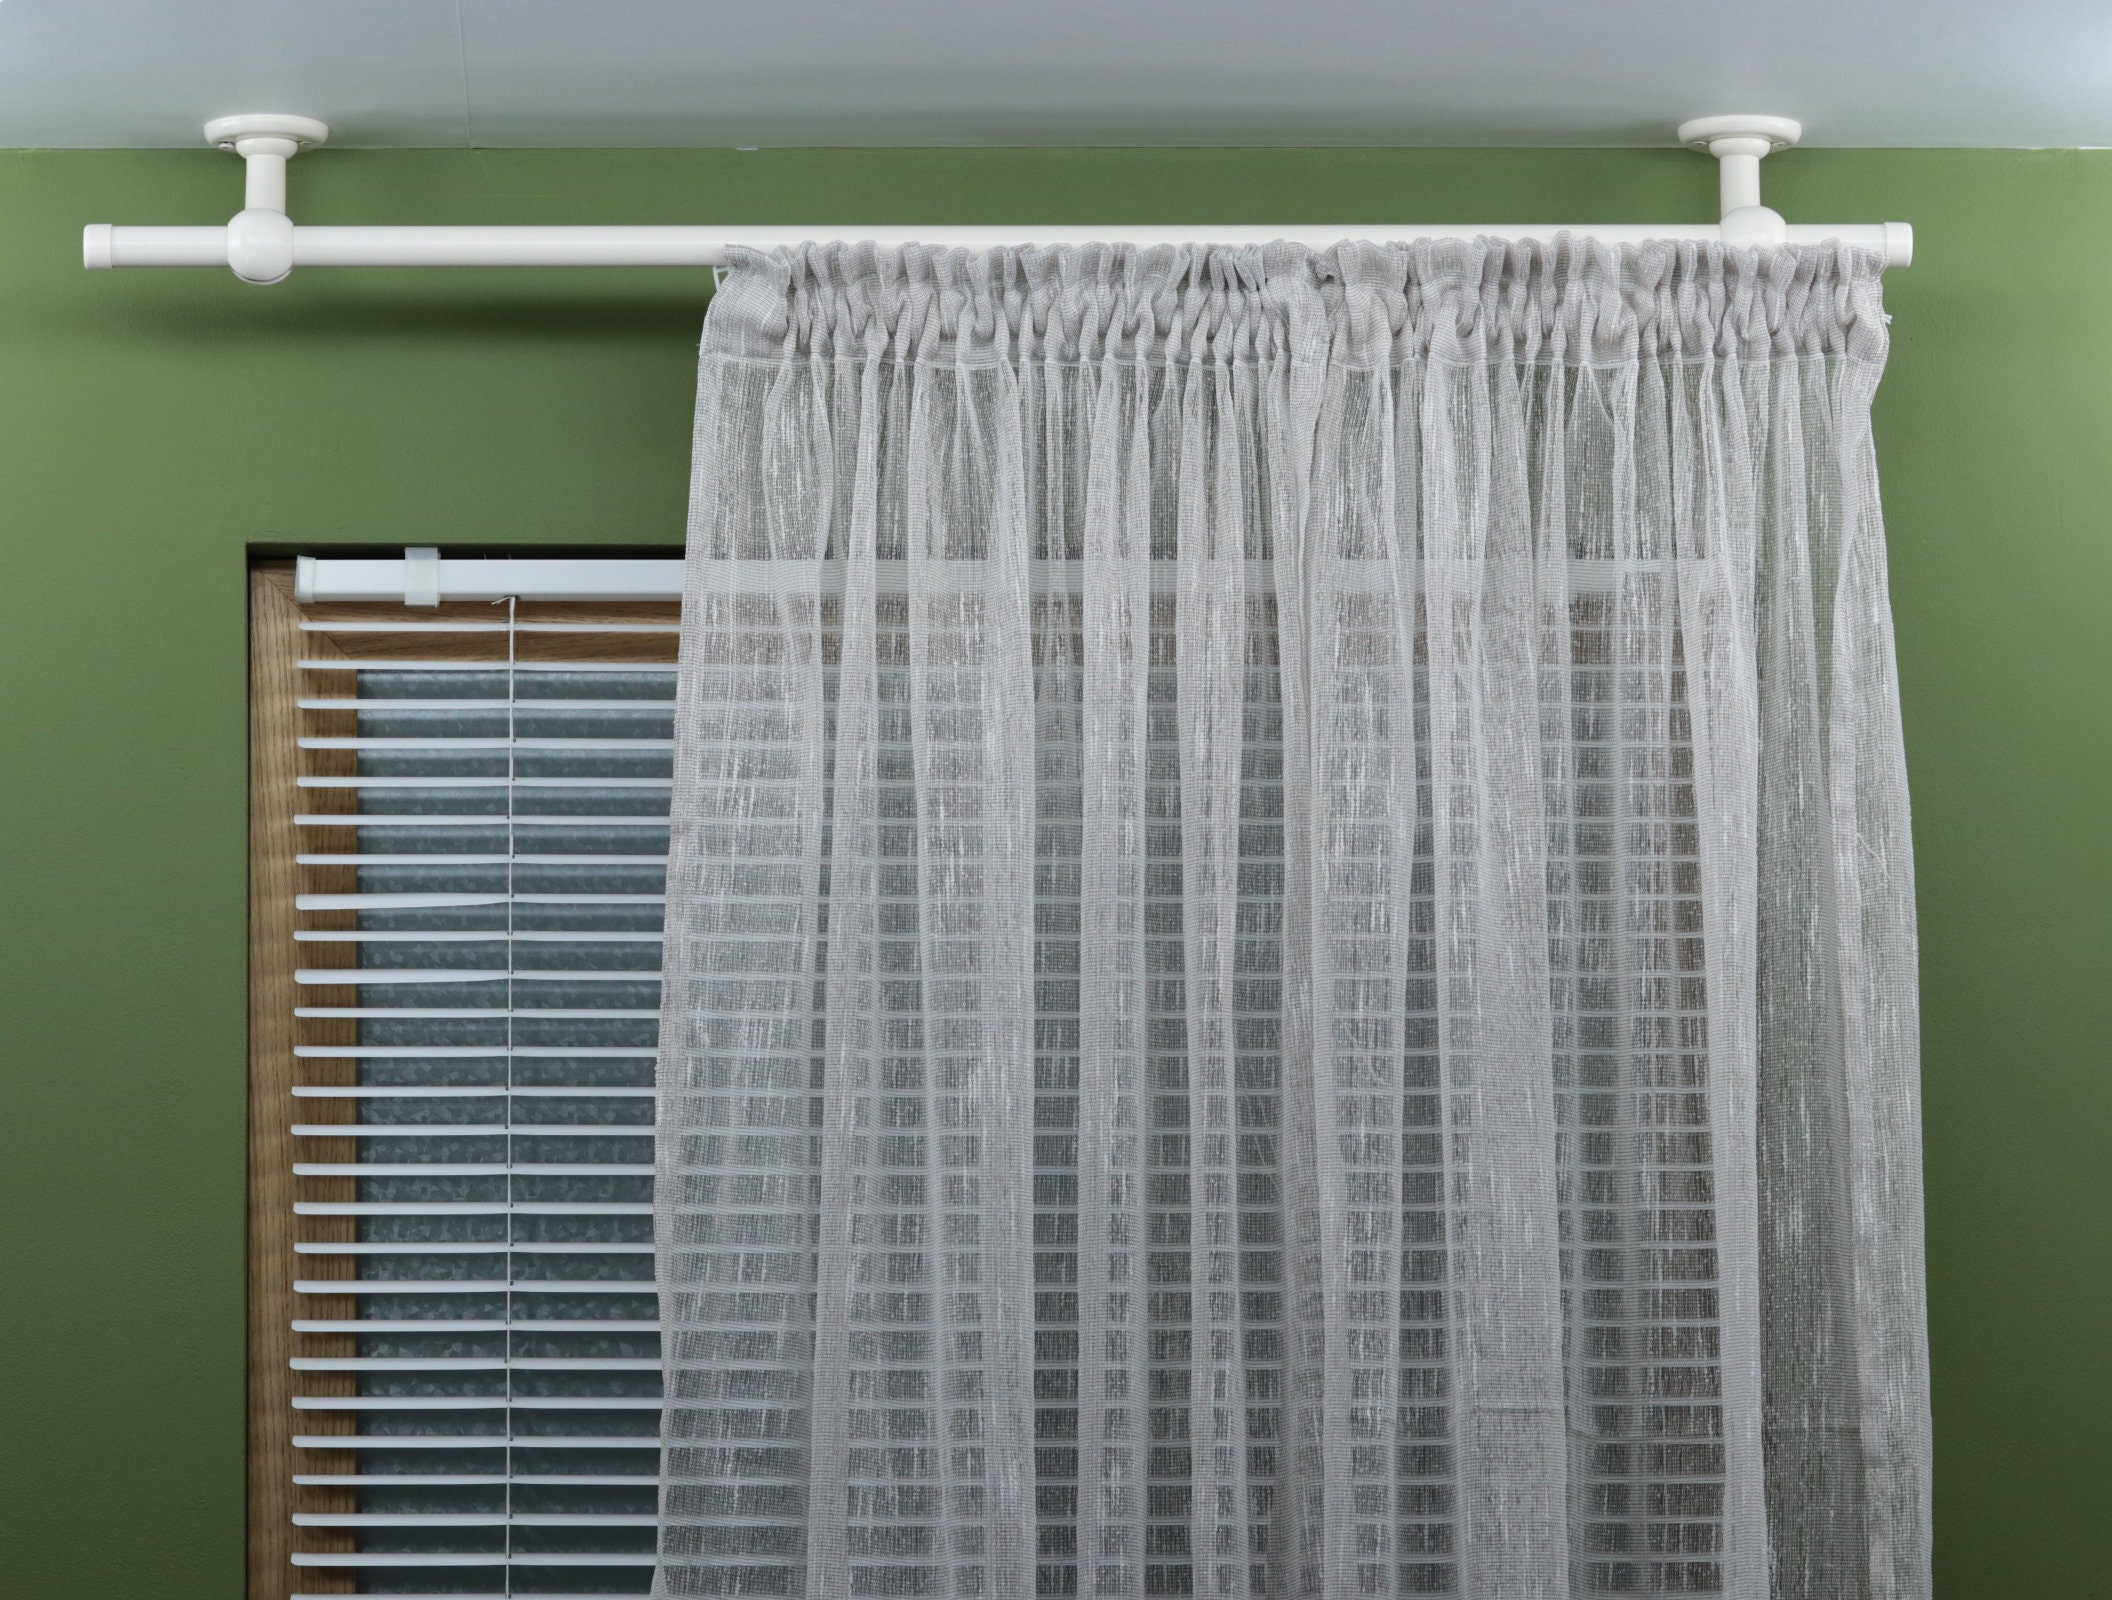 Soportes para cortinas, 2 ganchos para cortinas con bola de cristal  transparente, soporte de cortina de ventana montado en la pared para  decoración